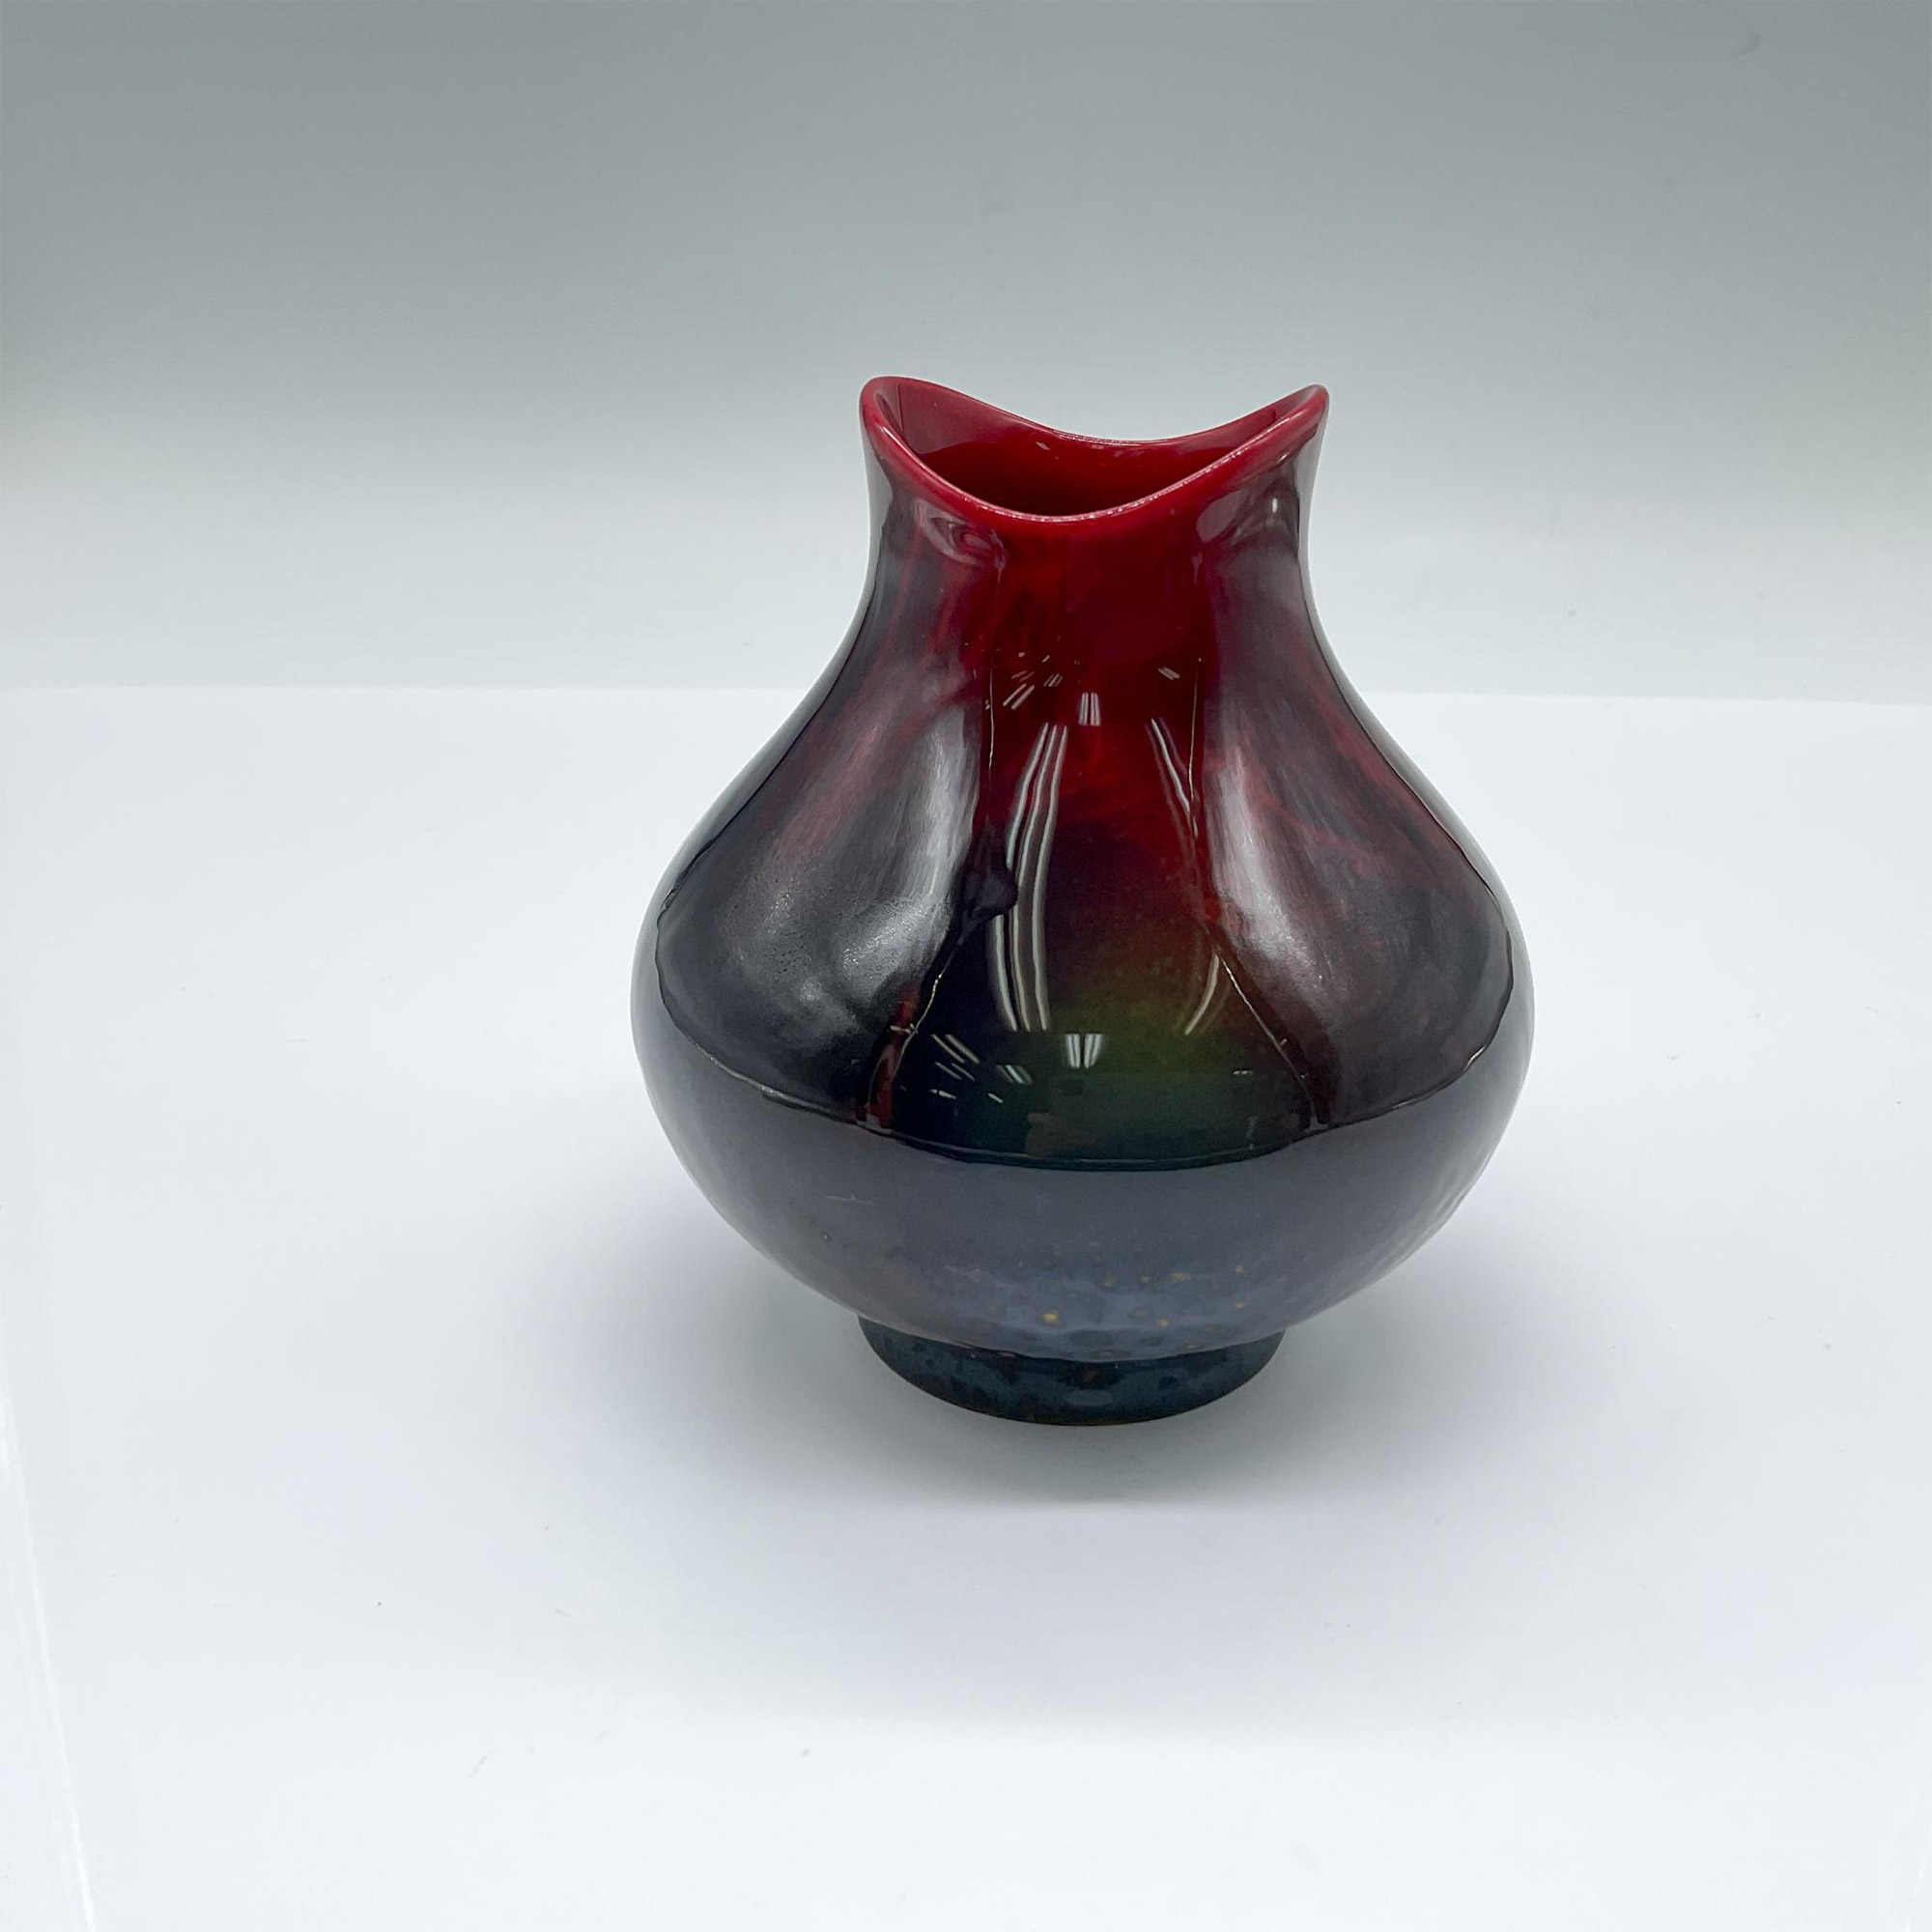 Royal Doulton Bone China Flambe Veined Vase, 1605 - Image 2 of 3